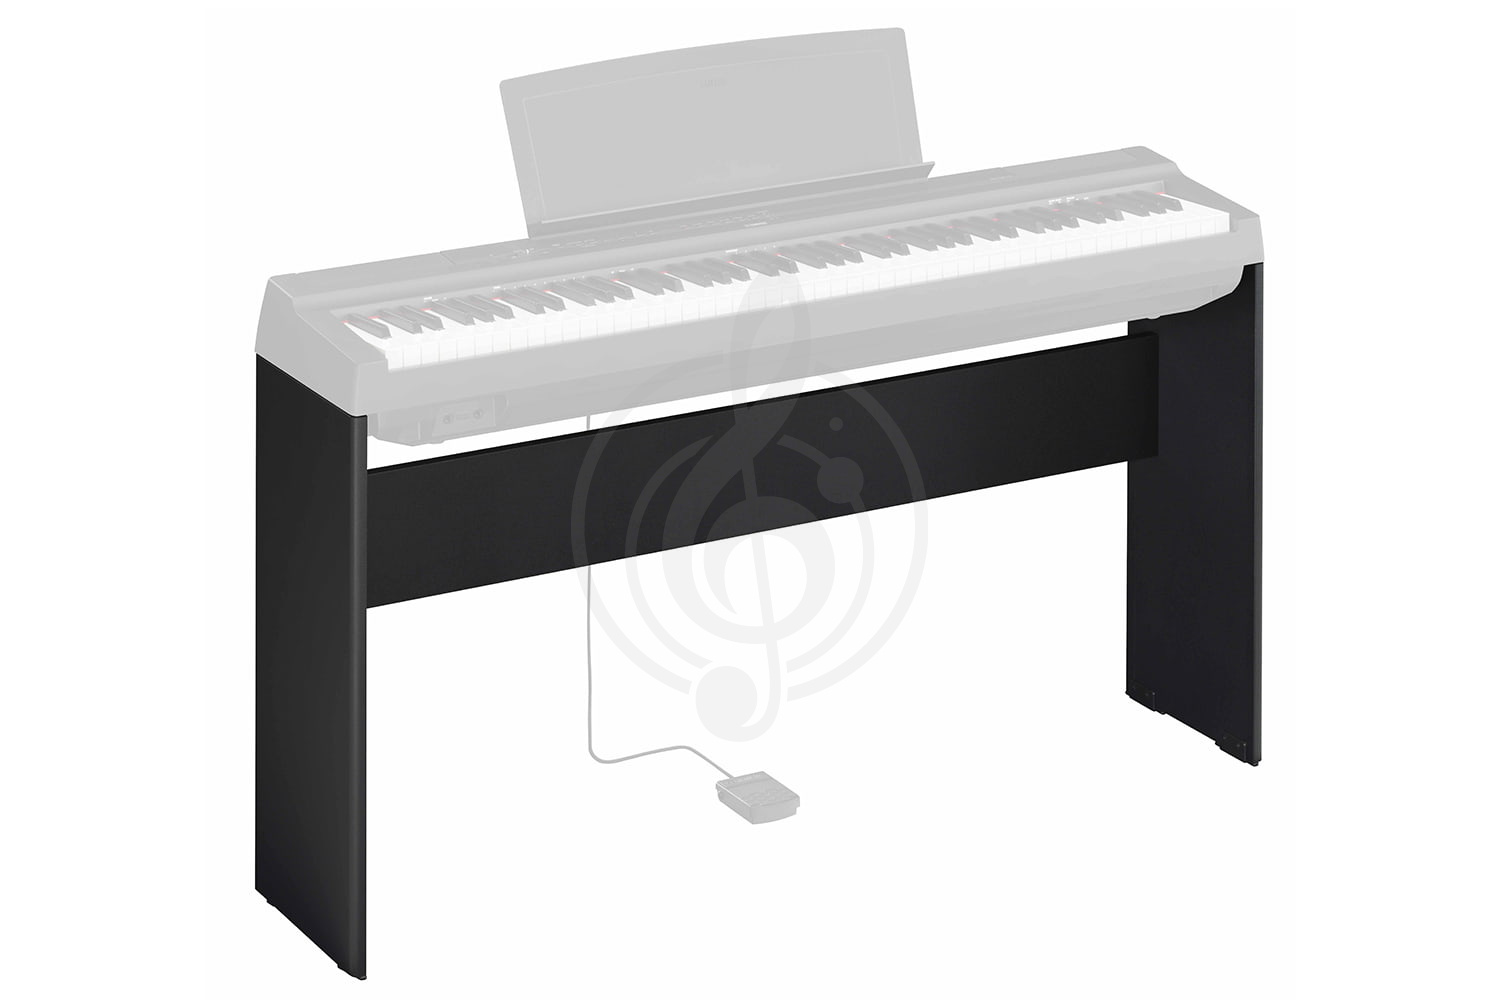 Стойка для цифровых пианино Подставки для цифровых пианино Yamaha YAMAHA L-125B - Стойка для цифрового пианино P-125B L-125B //E - фото 1